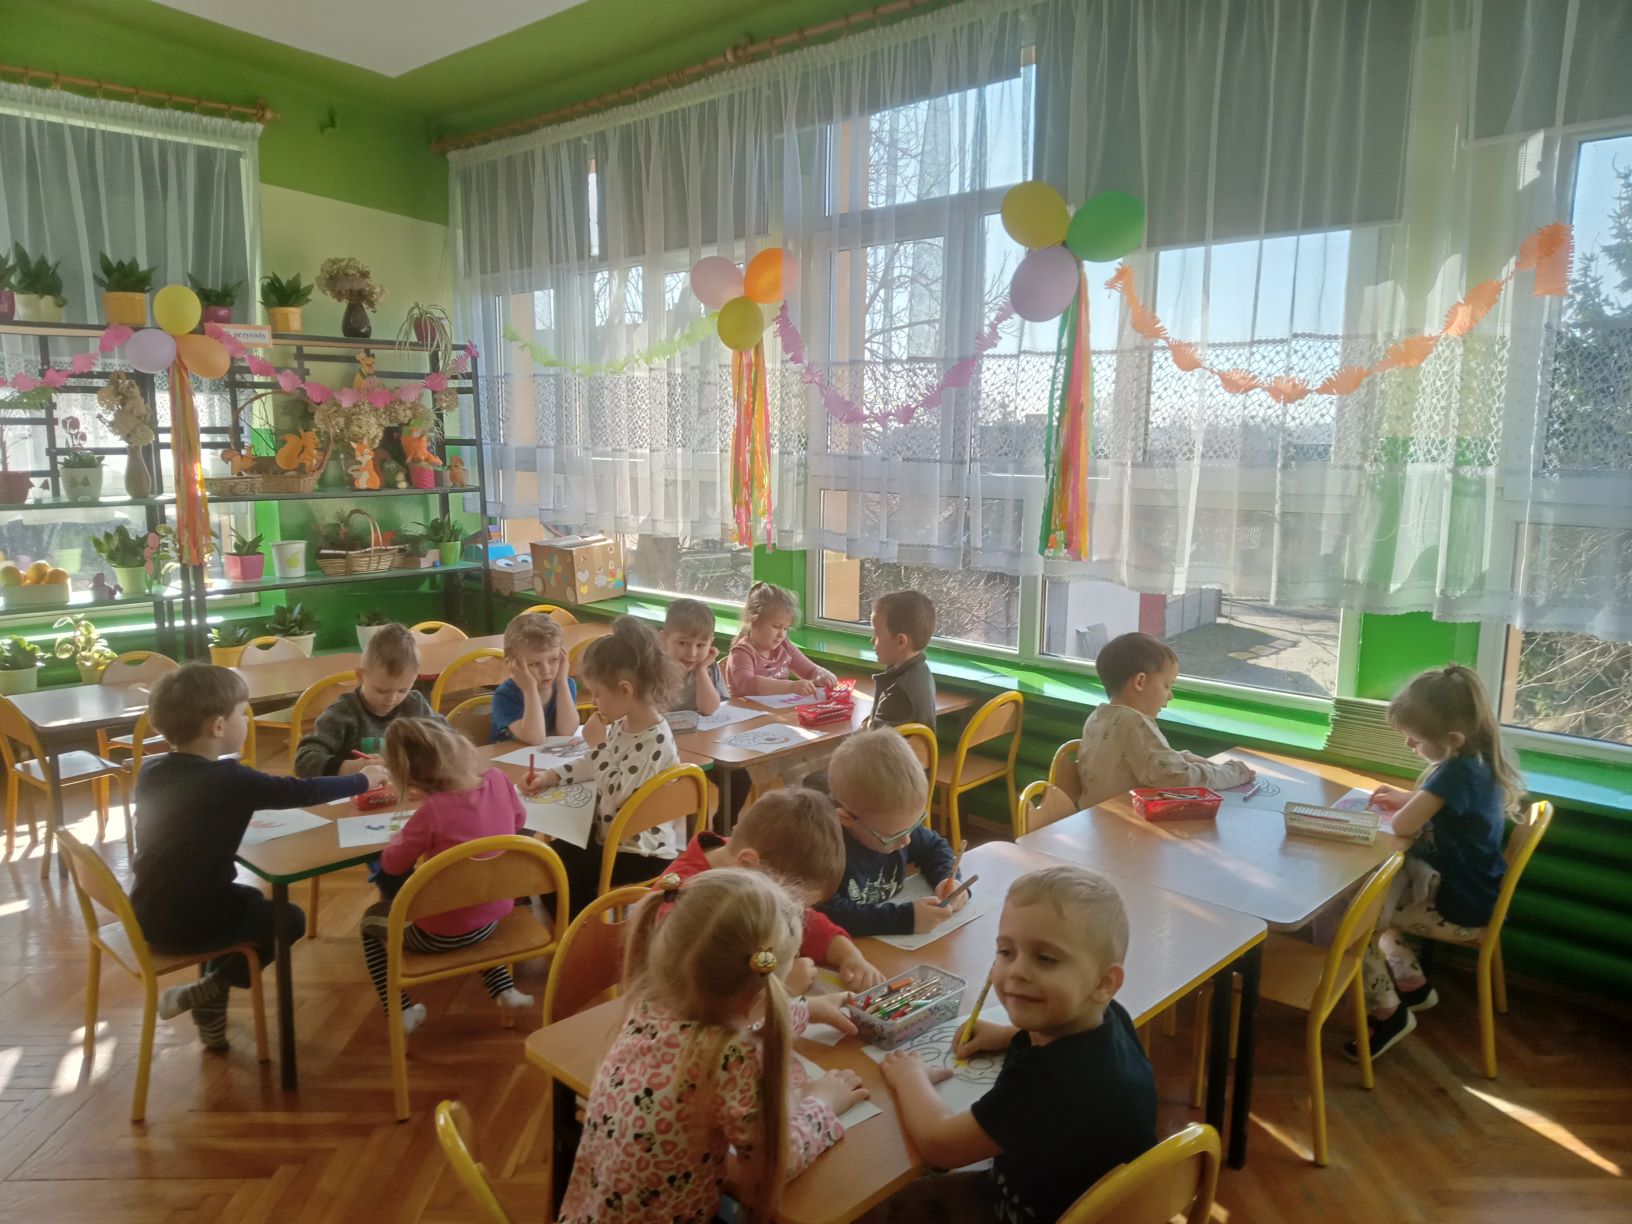 dzieci siedzą przy stolikach i kolorują obrazek pączka